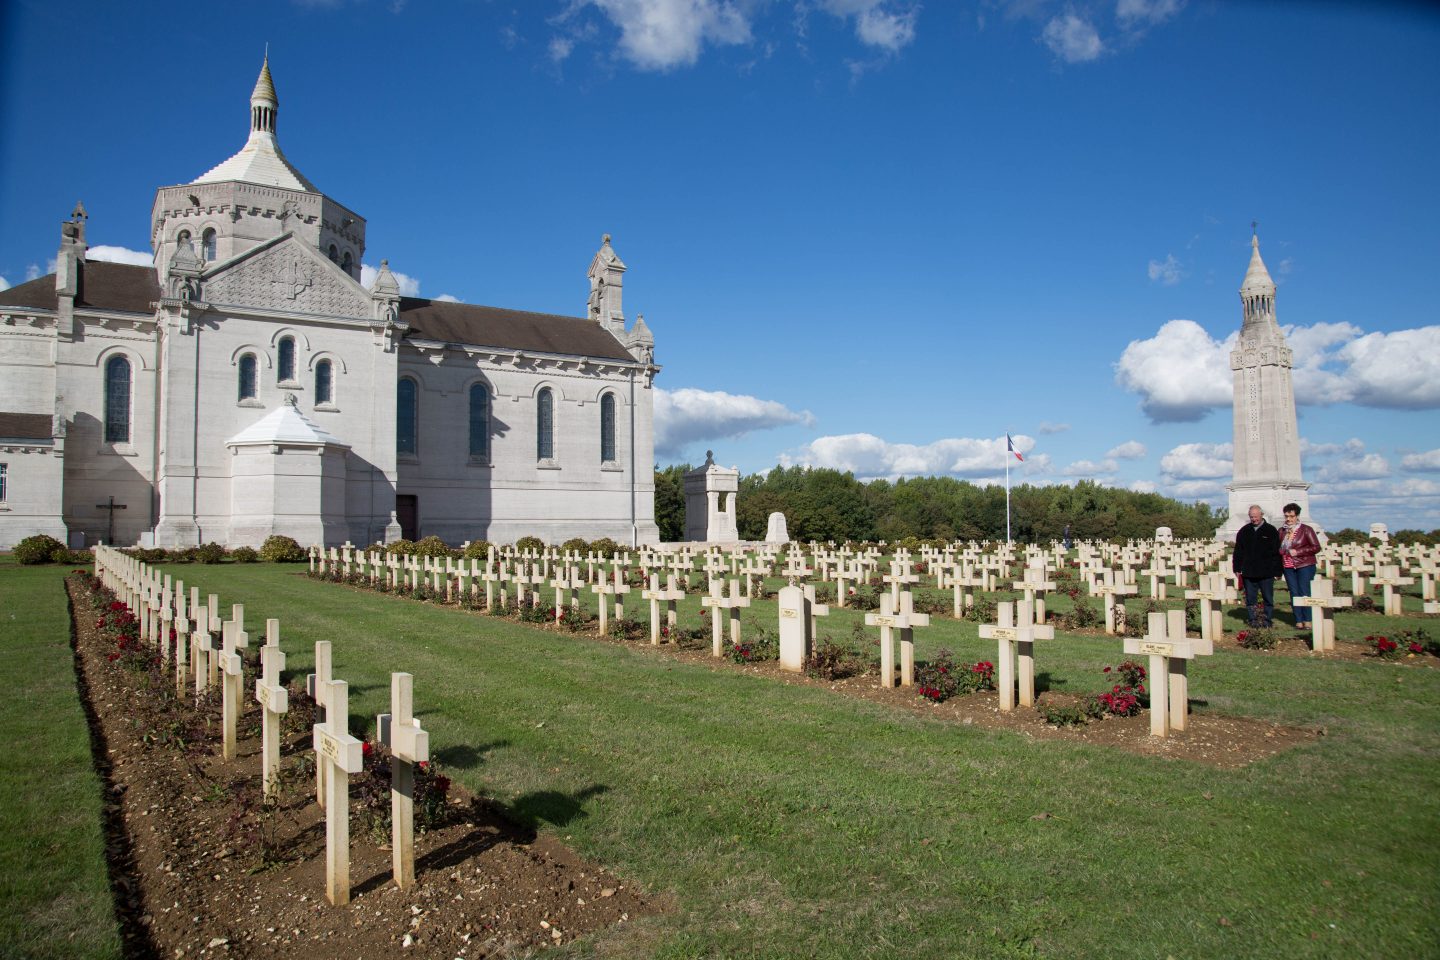 Nécropole Notre-Dame de Lorette, haut lieu de mémoire de la Première Guerre mondiale en Nord-Pas-de-Calais ©Aurélie Leclercq